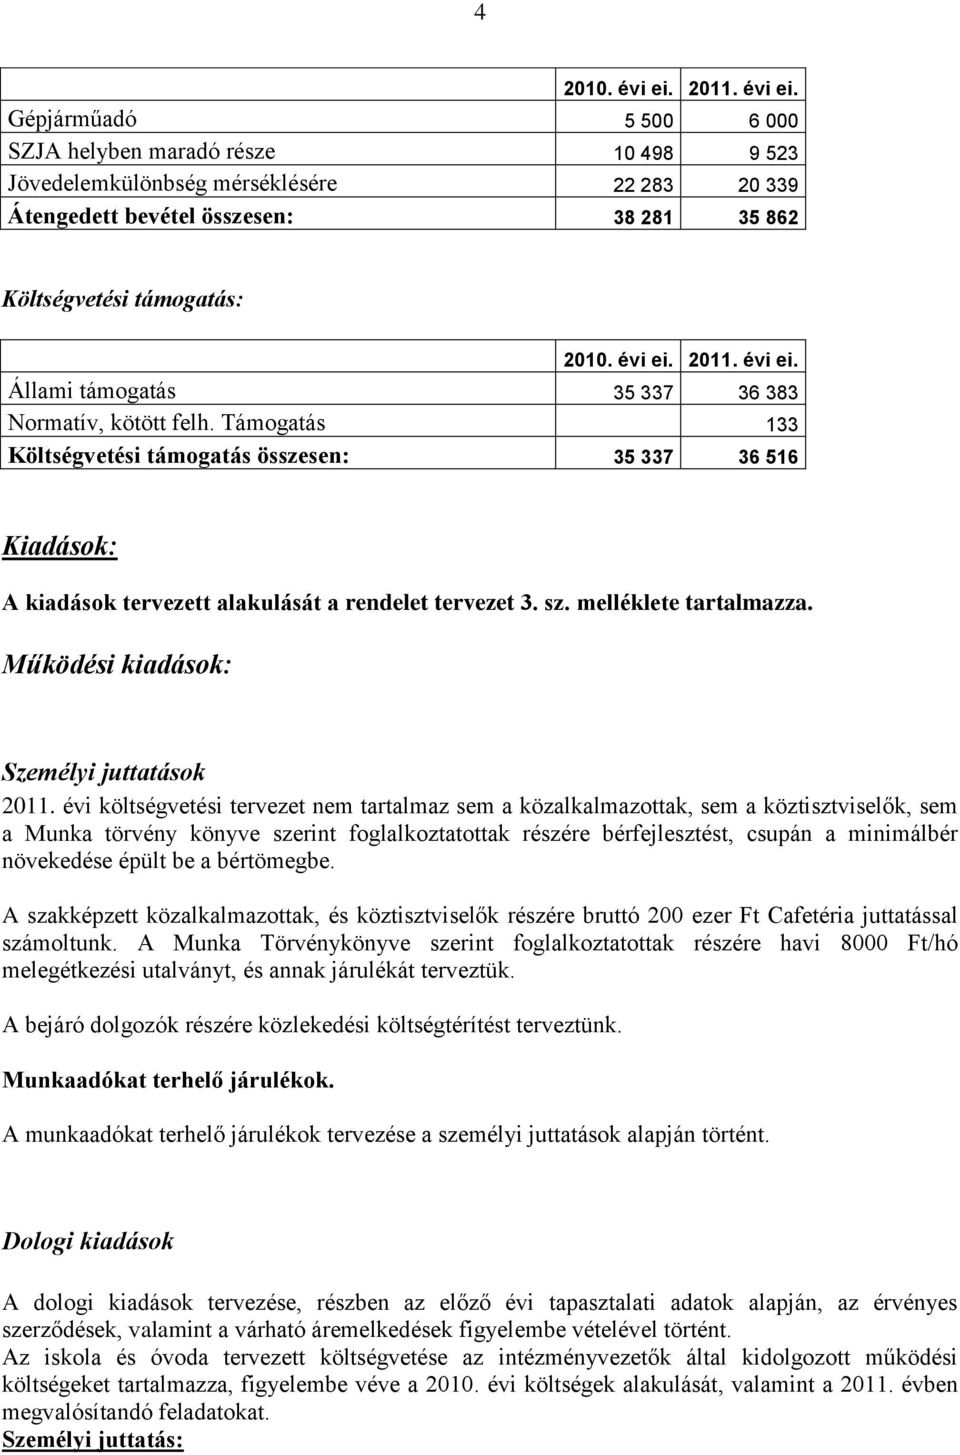 Működési kiadások: Személyi juttatások 2011.